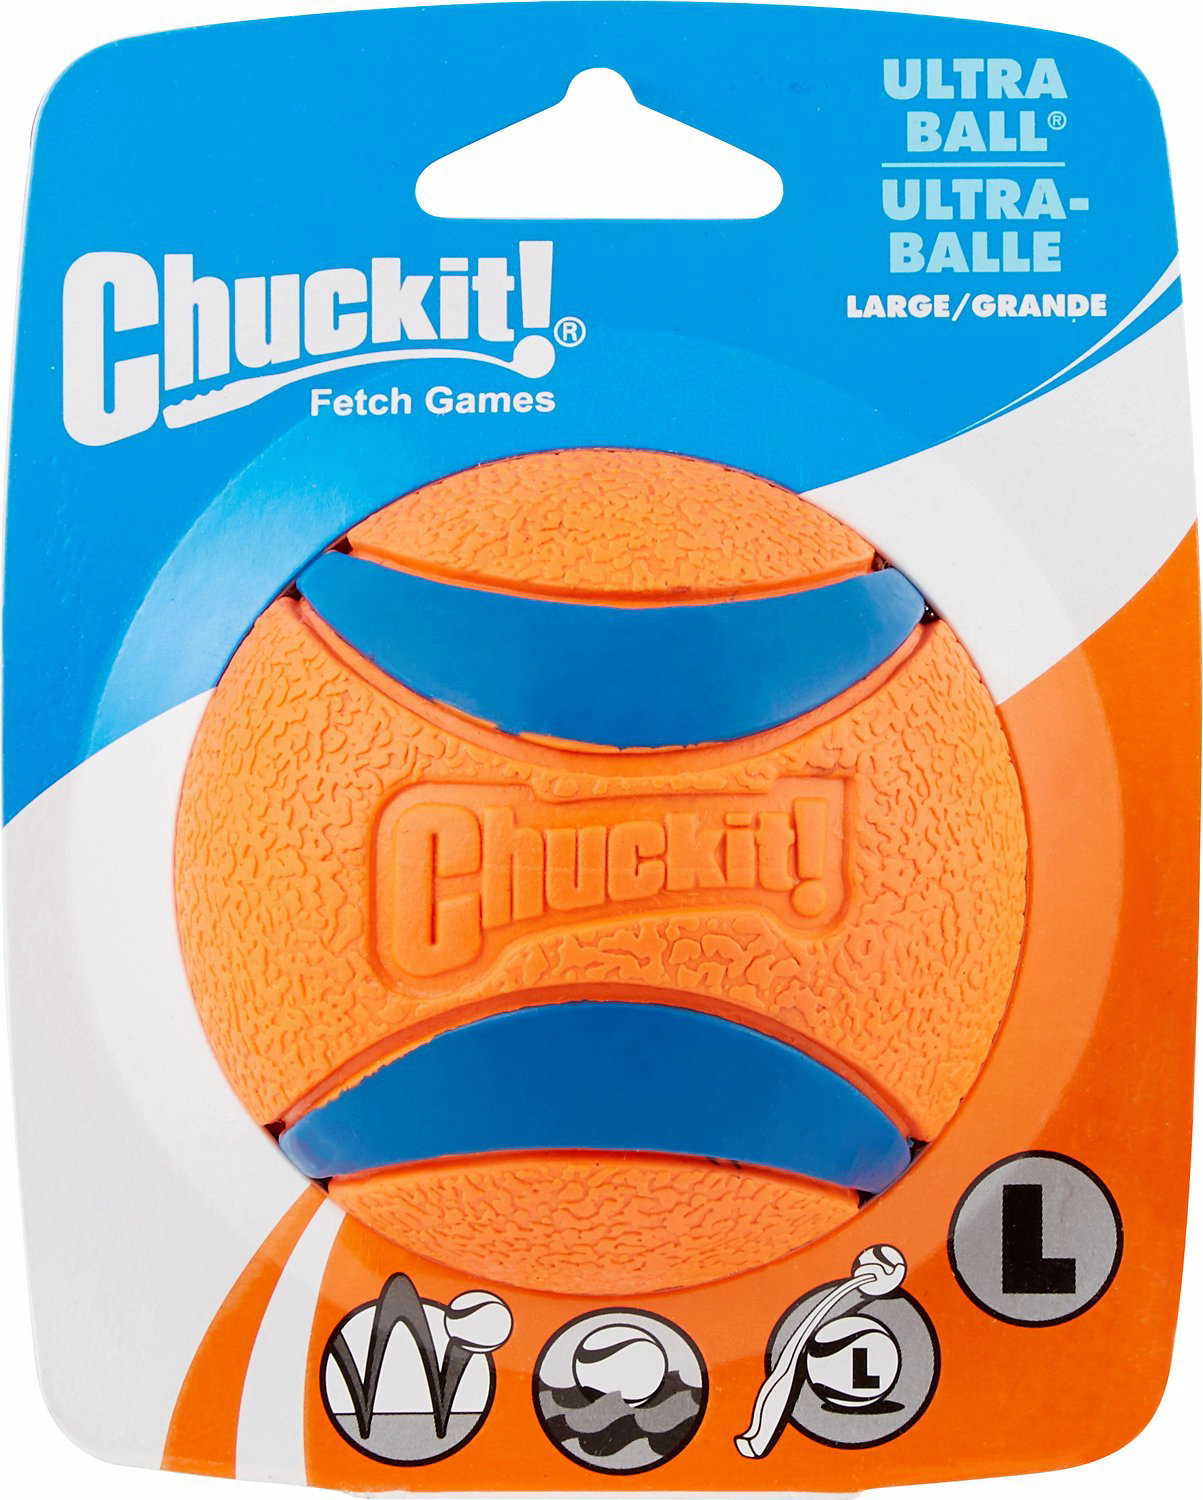 Chuckit Ultra Ball 1er Pack